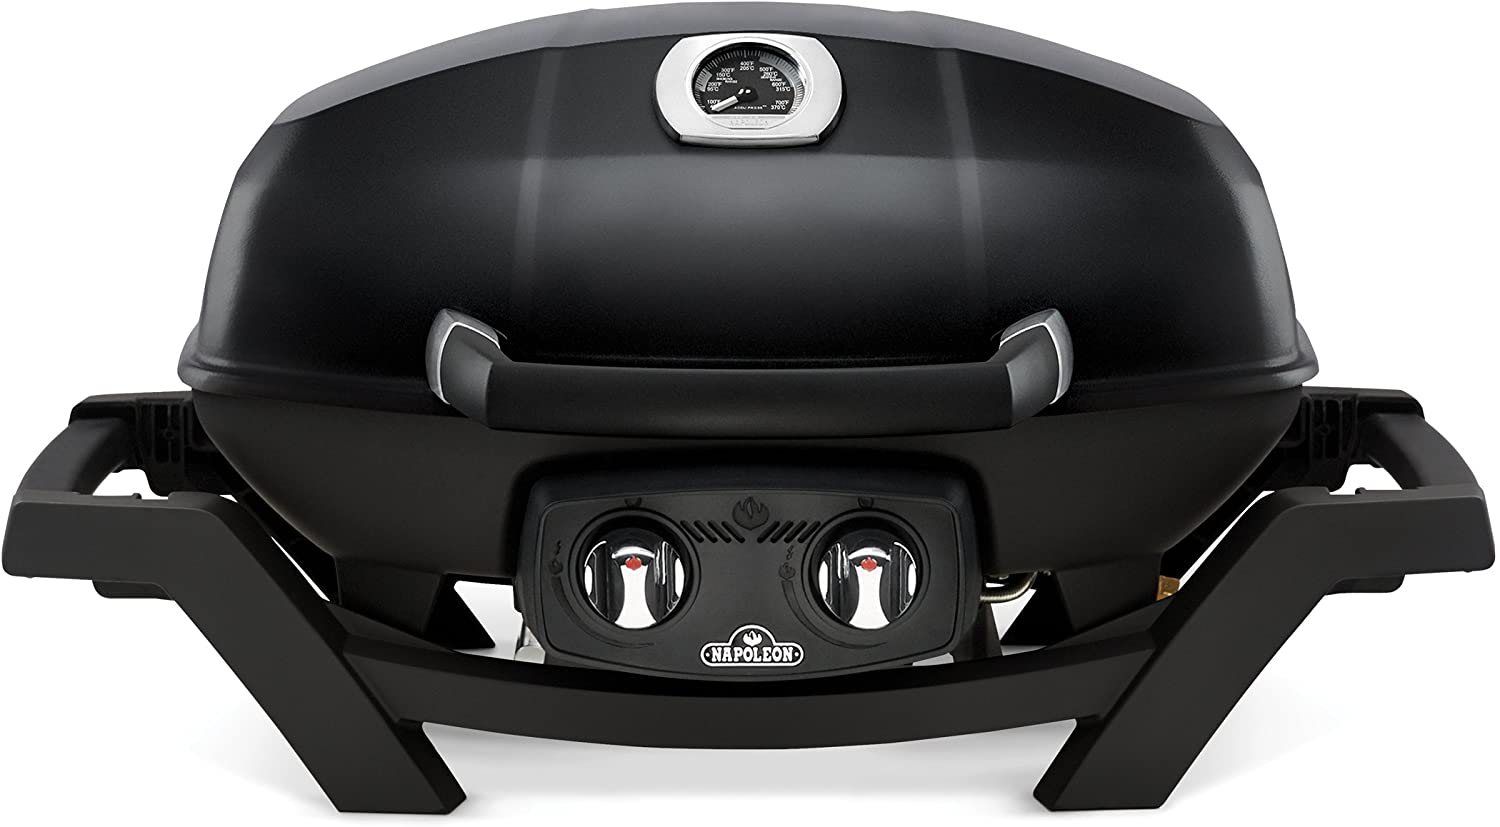 napoleon-travelq-pro285-bk-portable-propane-gas-grill-black-grill